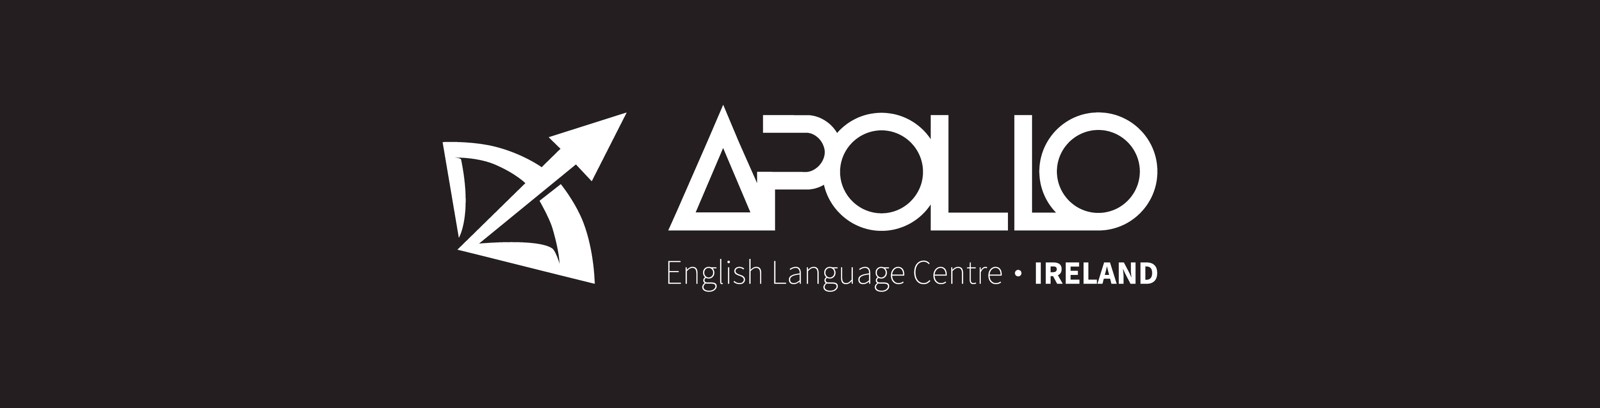 GKR Yurtdışı Eğitim Danışmanlık - Apollo Language Centre, Dublin